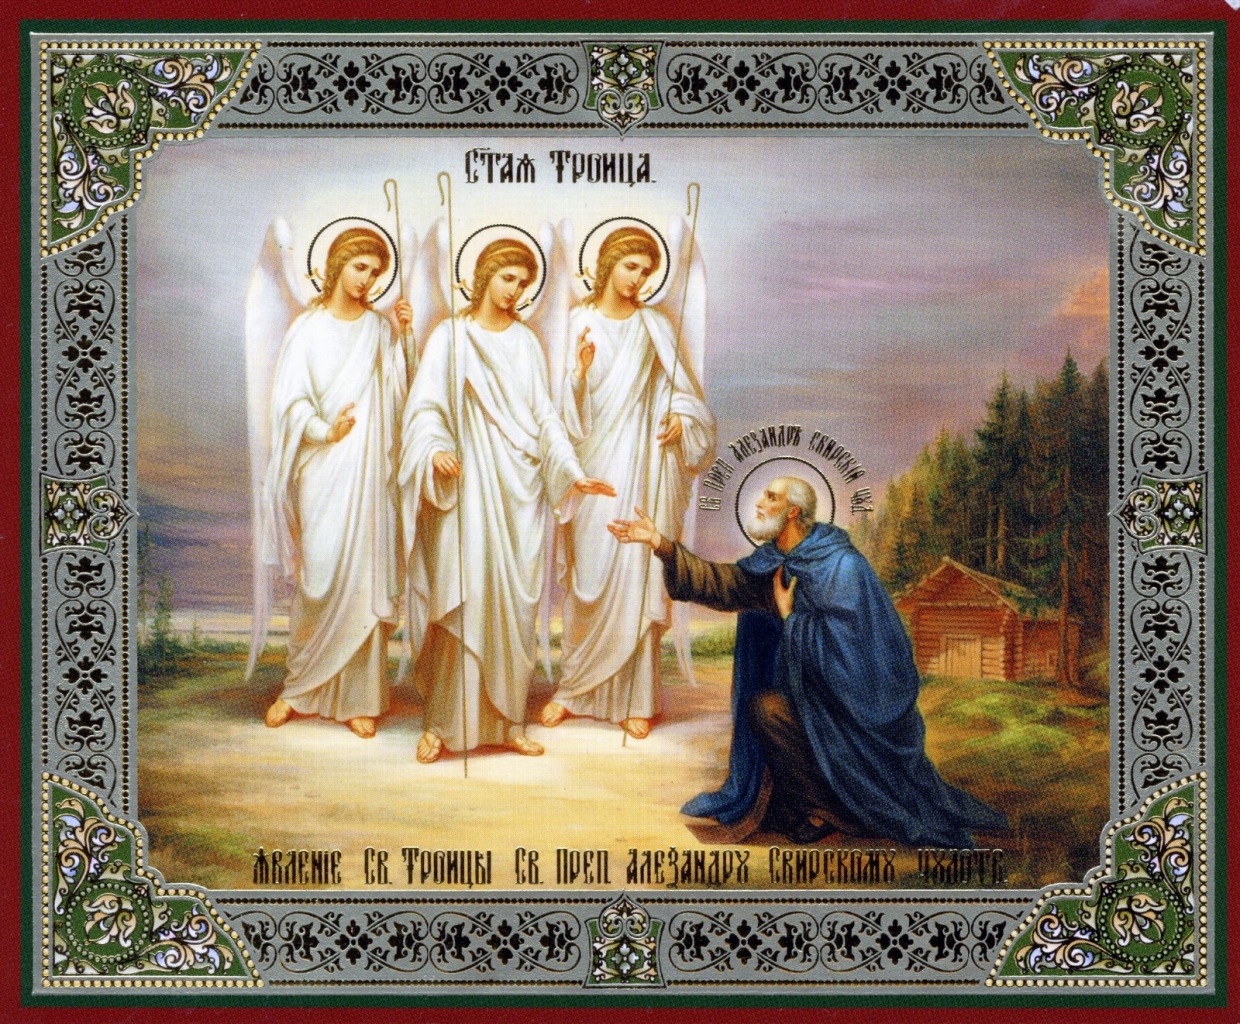 Это святое святое цветов. Явление Пресвятой Троицы преподобному Александру￼￼ Свирскому. Явление Троицы Александру Свирскому икона. Икона явление Святой Троицы Александру Свирскому.